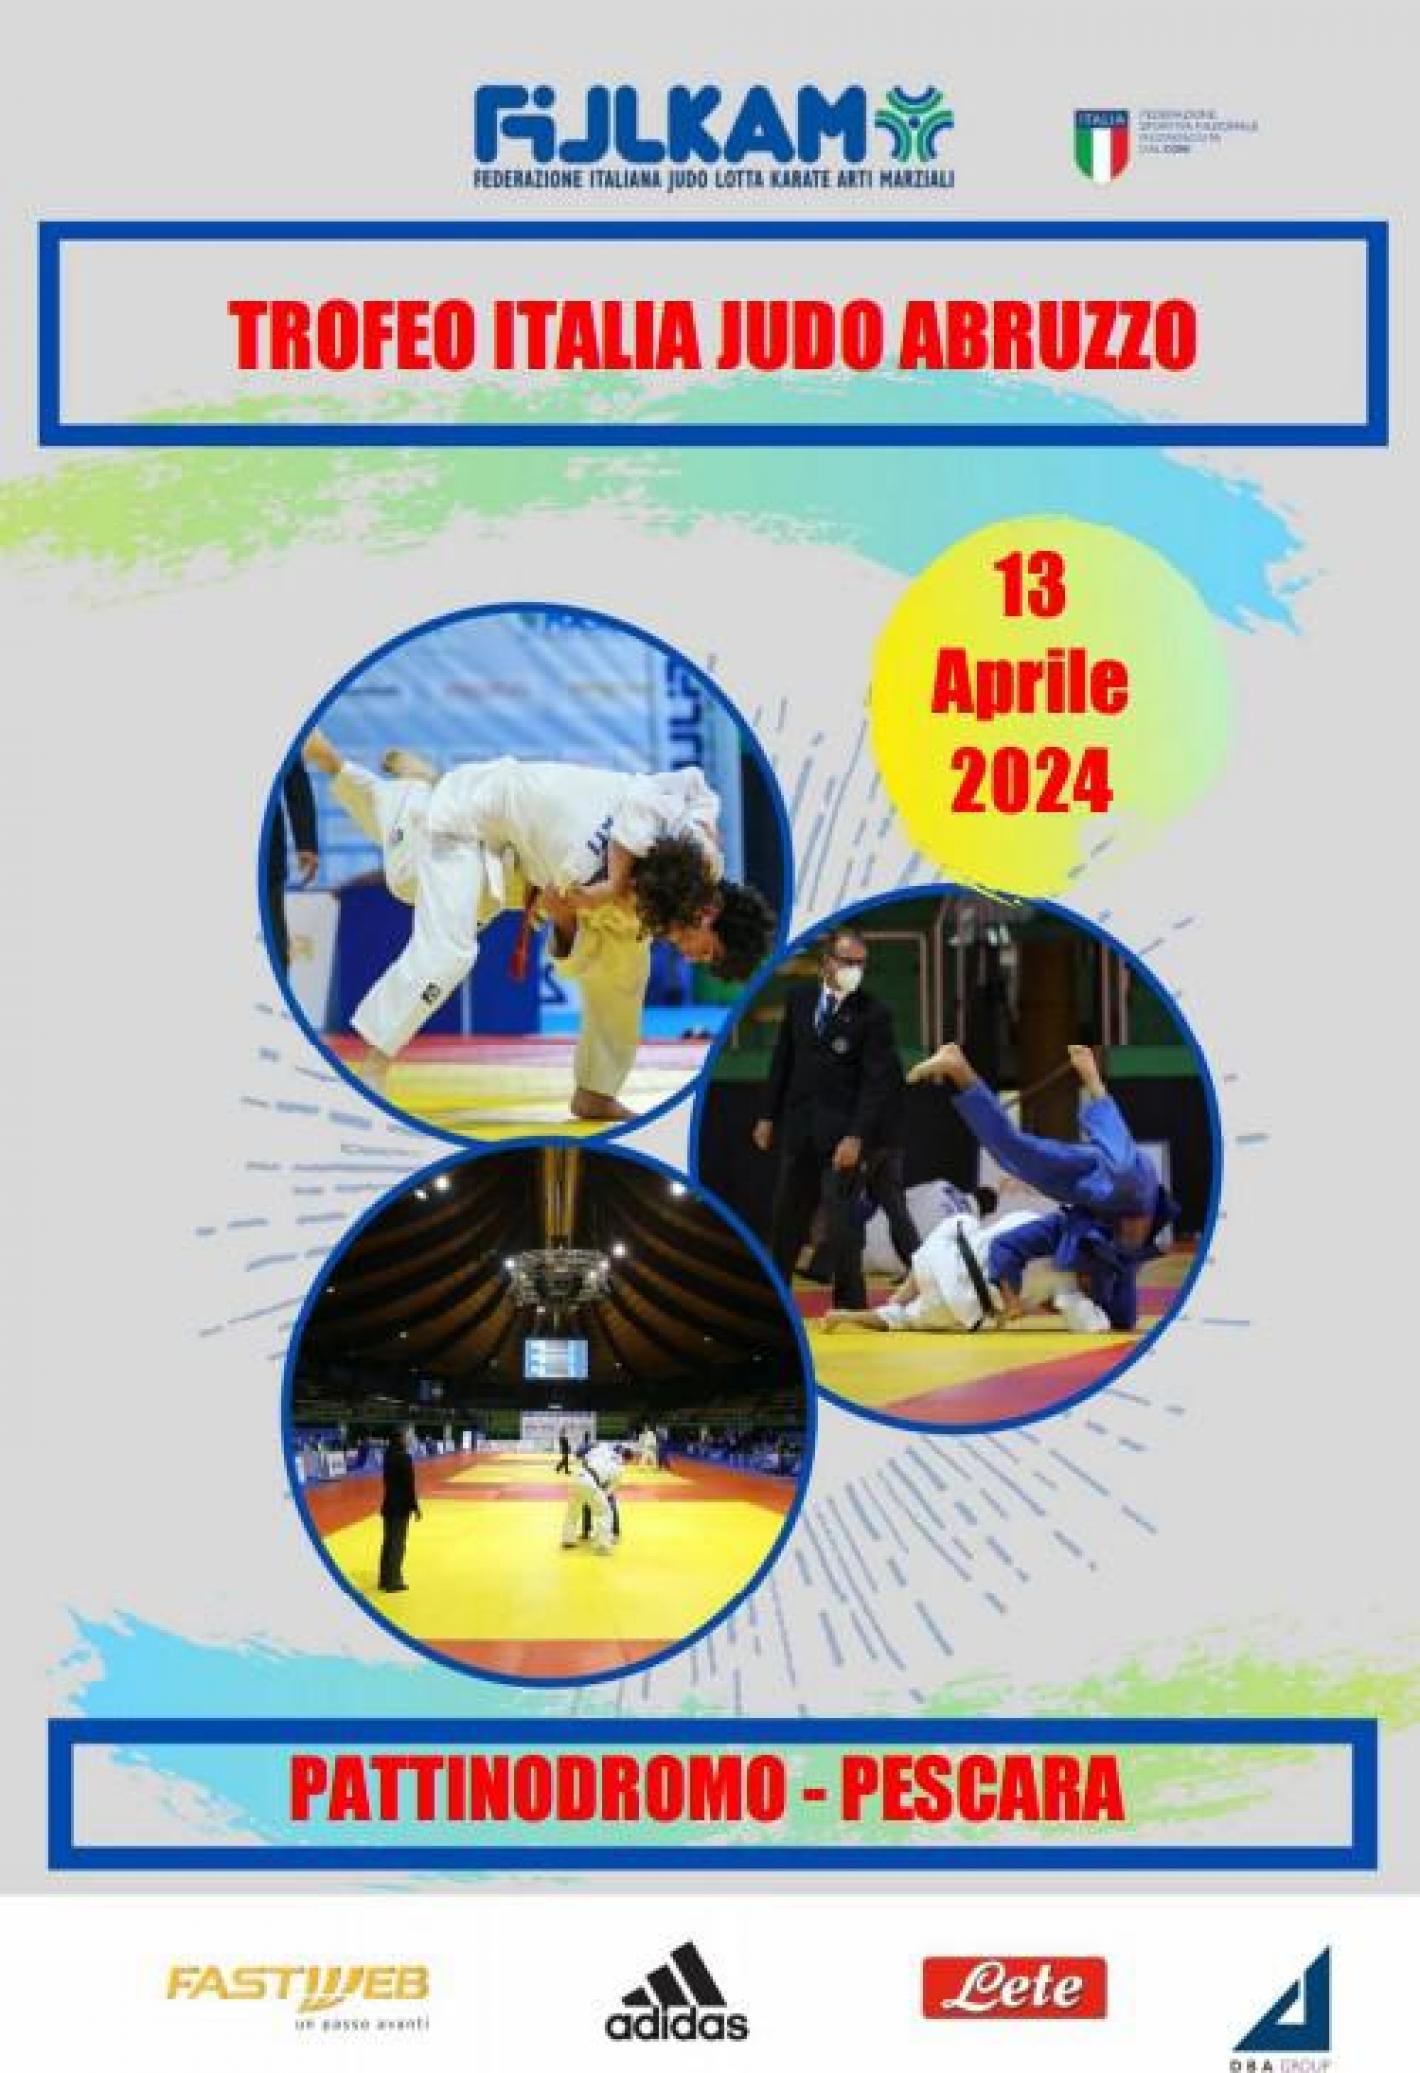 images/marche/Judo/medium/trofeo_italia_2024.jpg